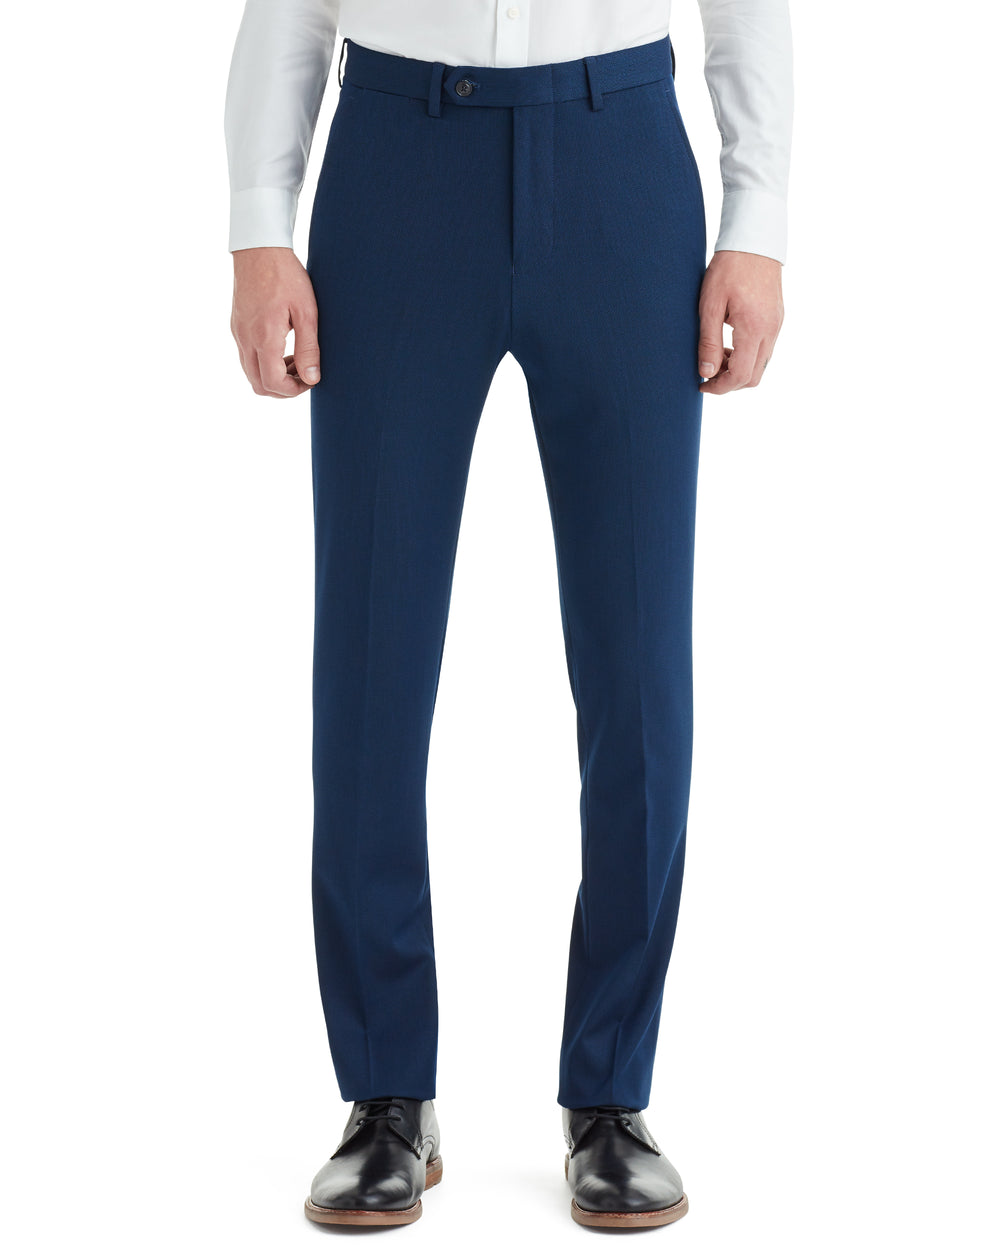 Cave Bi-Stretch Flat Front Suit Pant - Blue